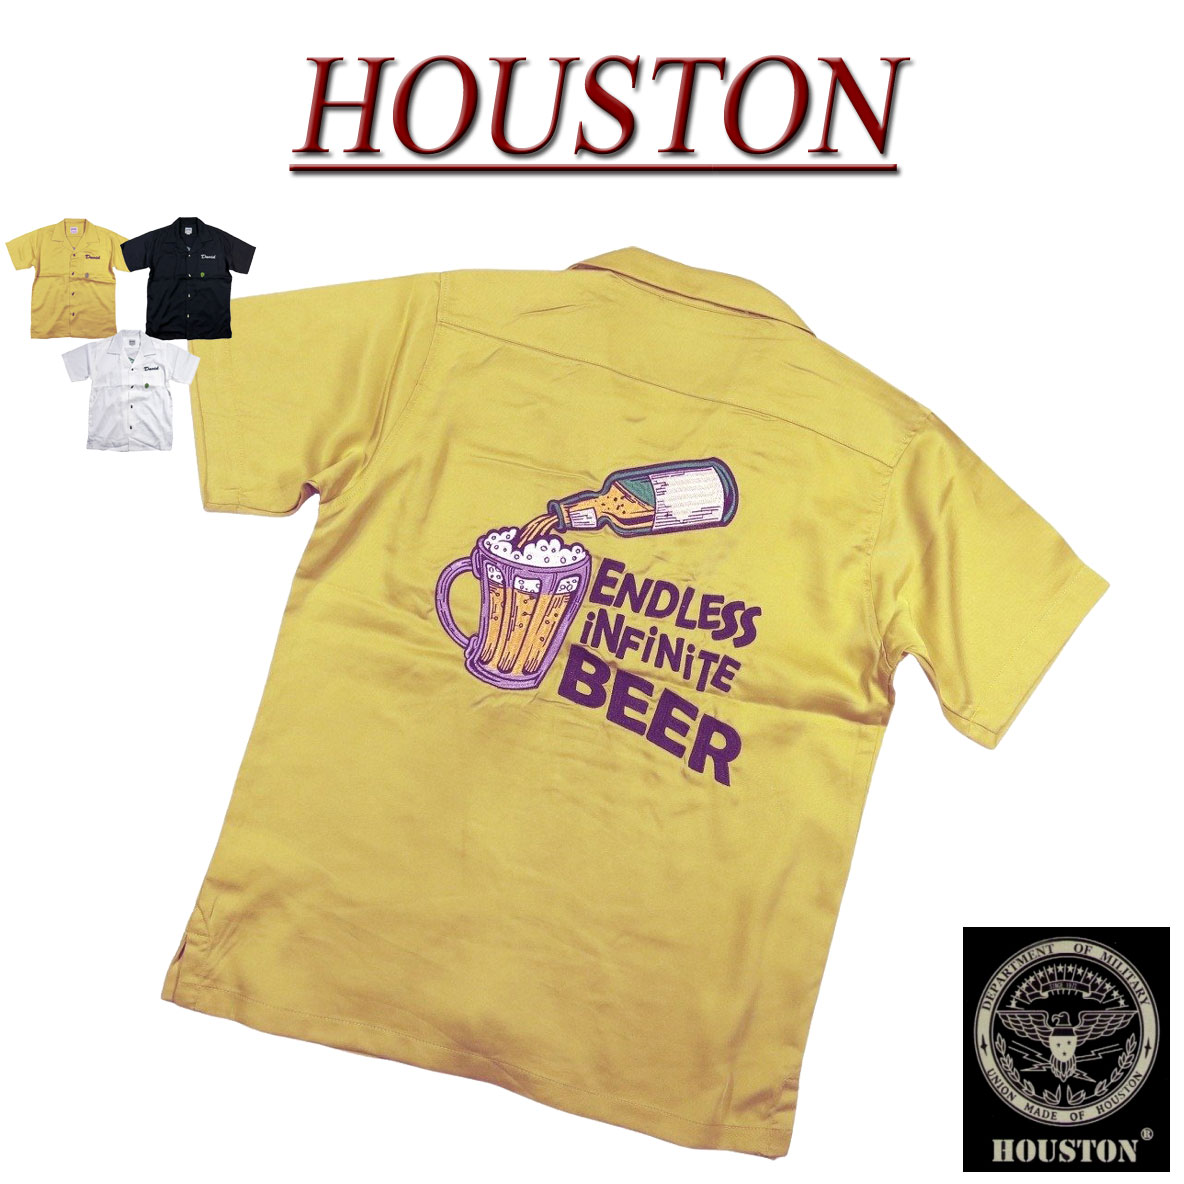  jf442 新品 HOUSTON 刺繍 半袖 ボーリングシャツ 40896 メンズ ヒューストン S/S BOWLING SHIRT テンセル素材 ボウリングシャツ ワークシャツ アメカジ 